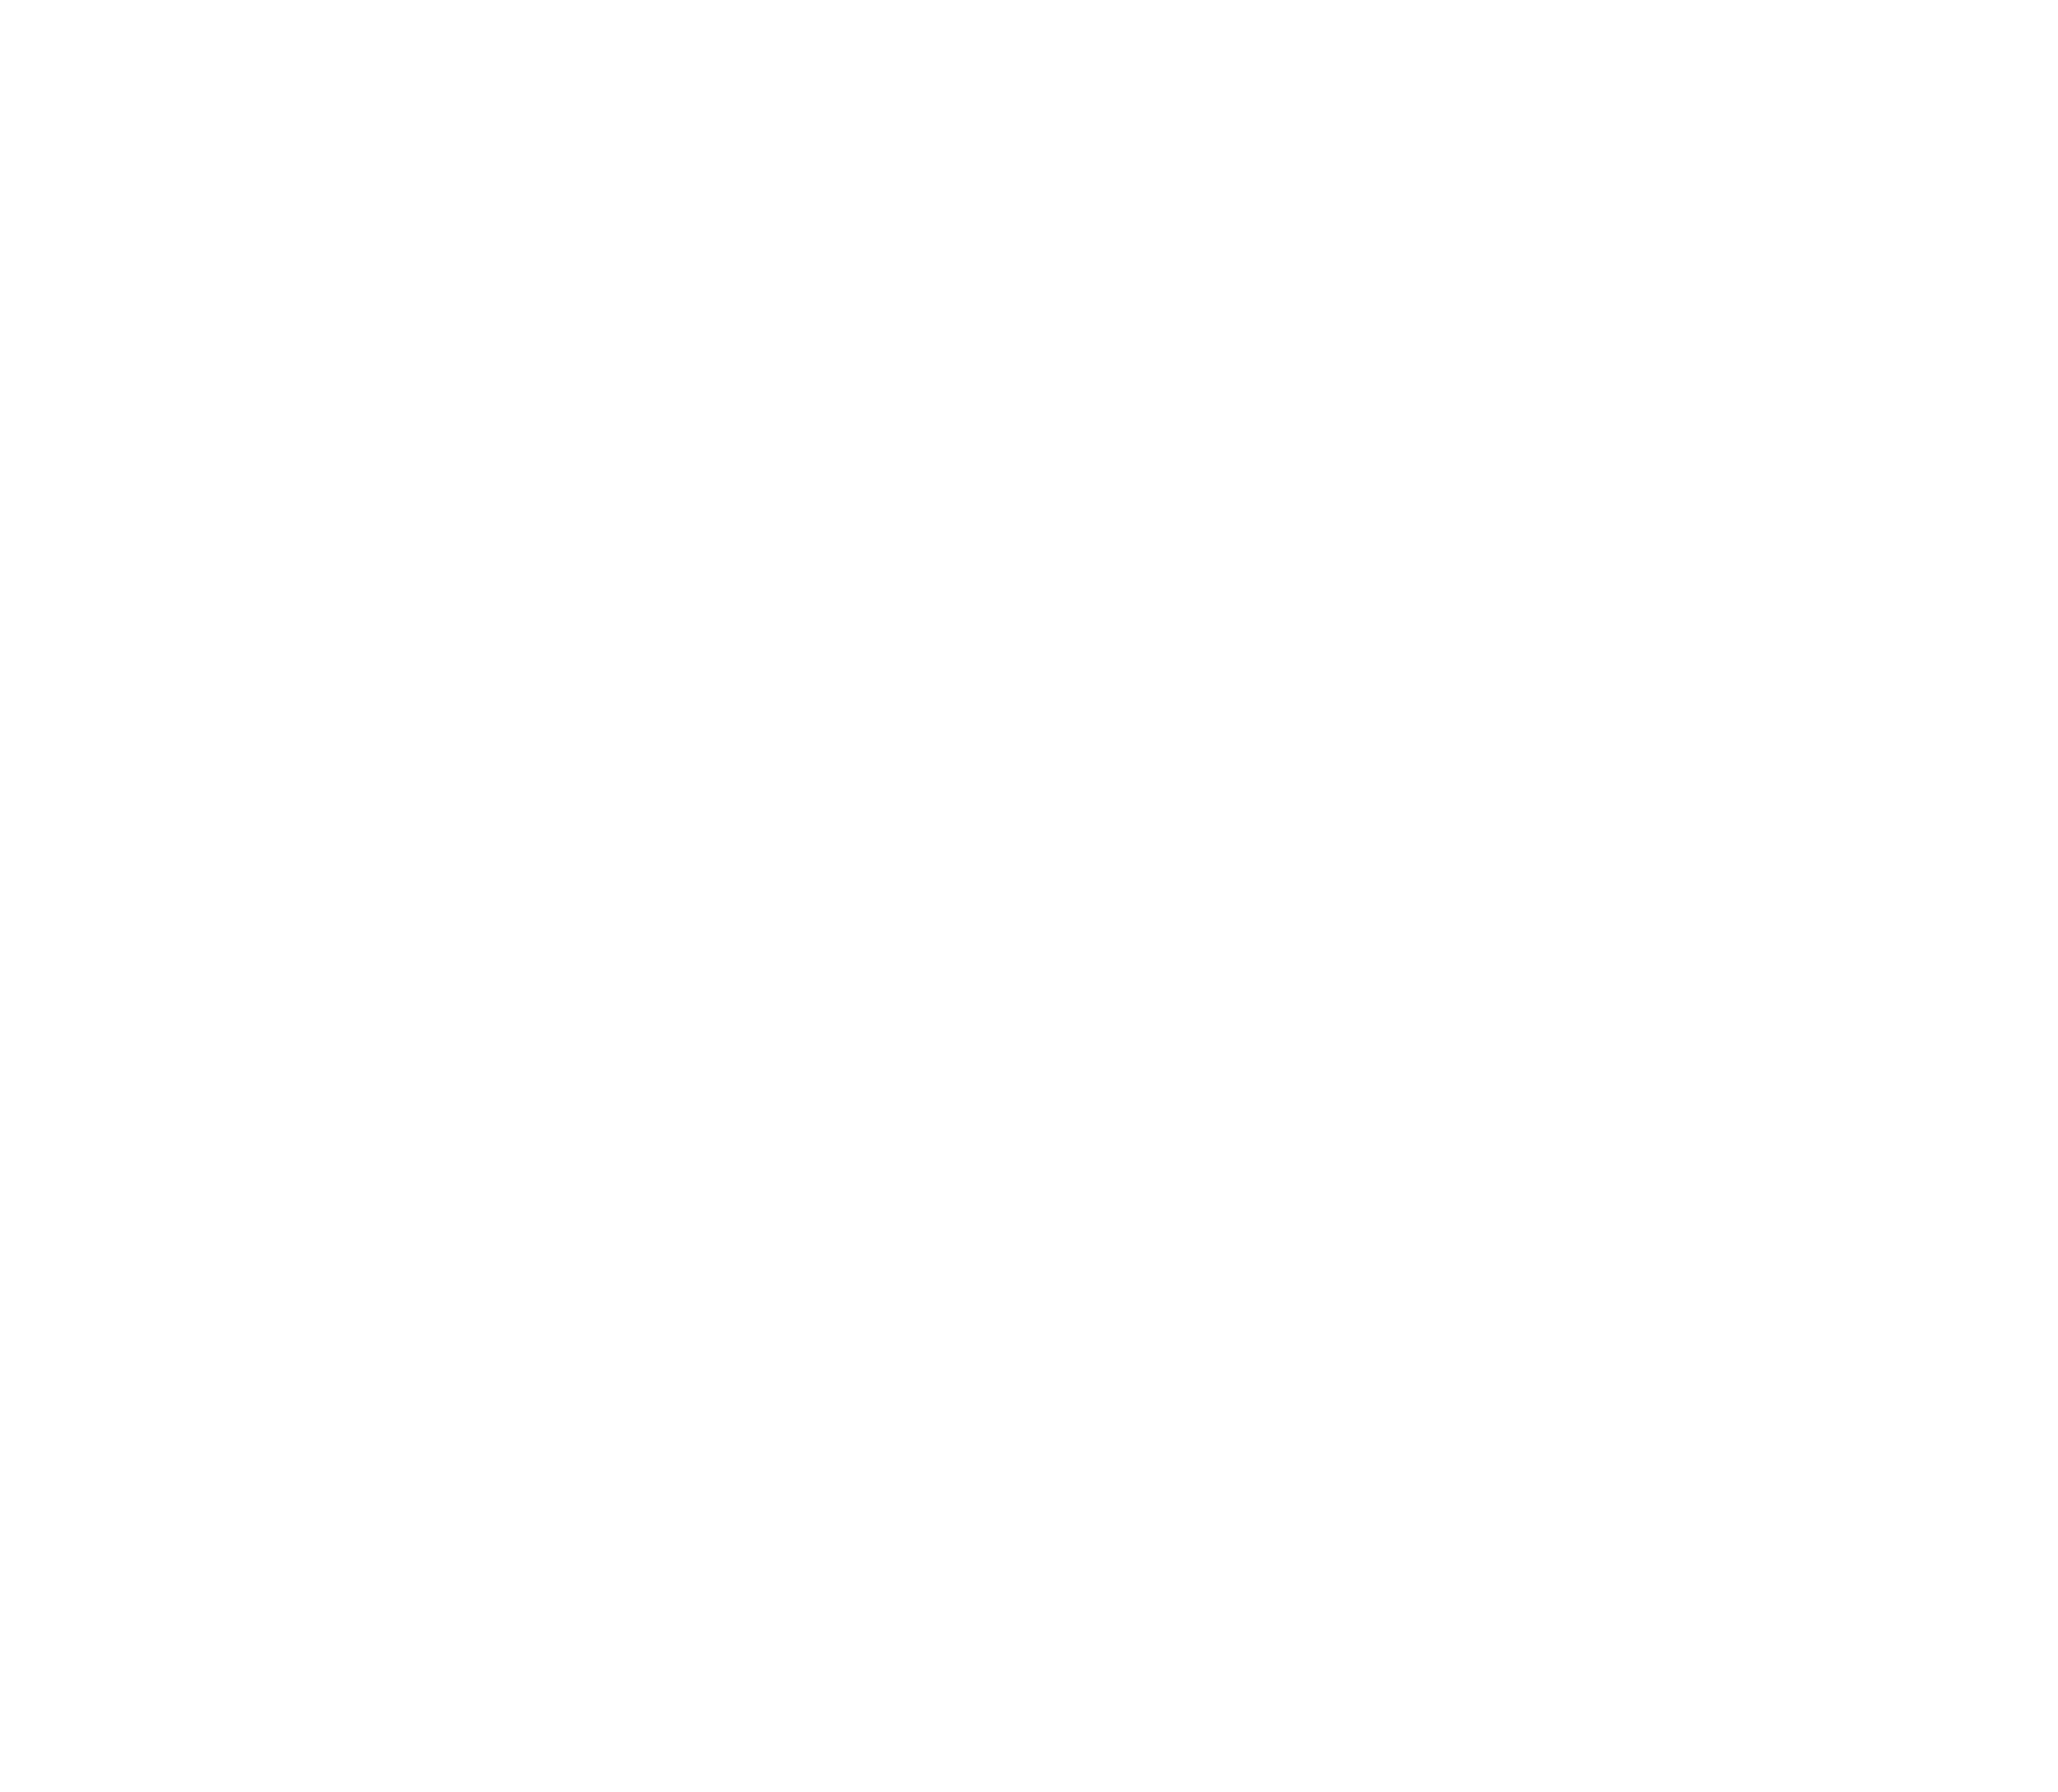 The Cazettes